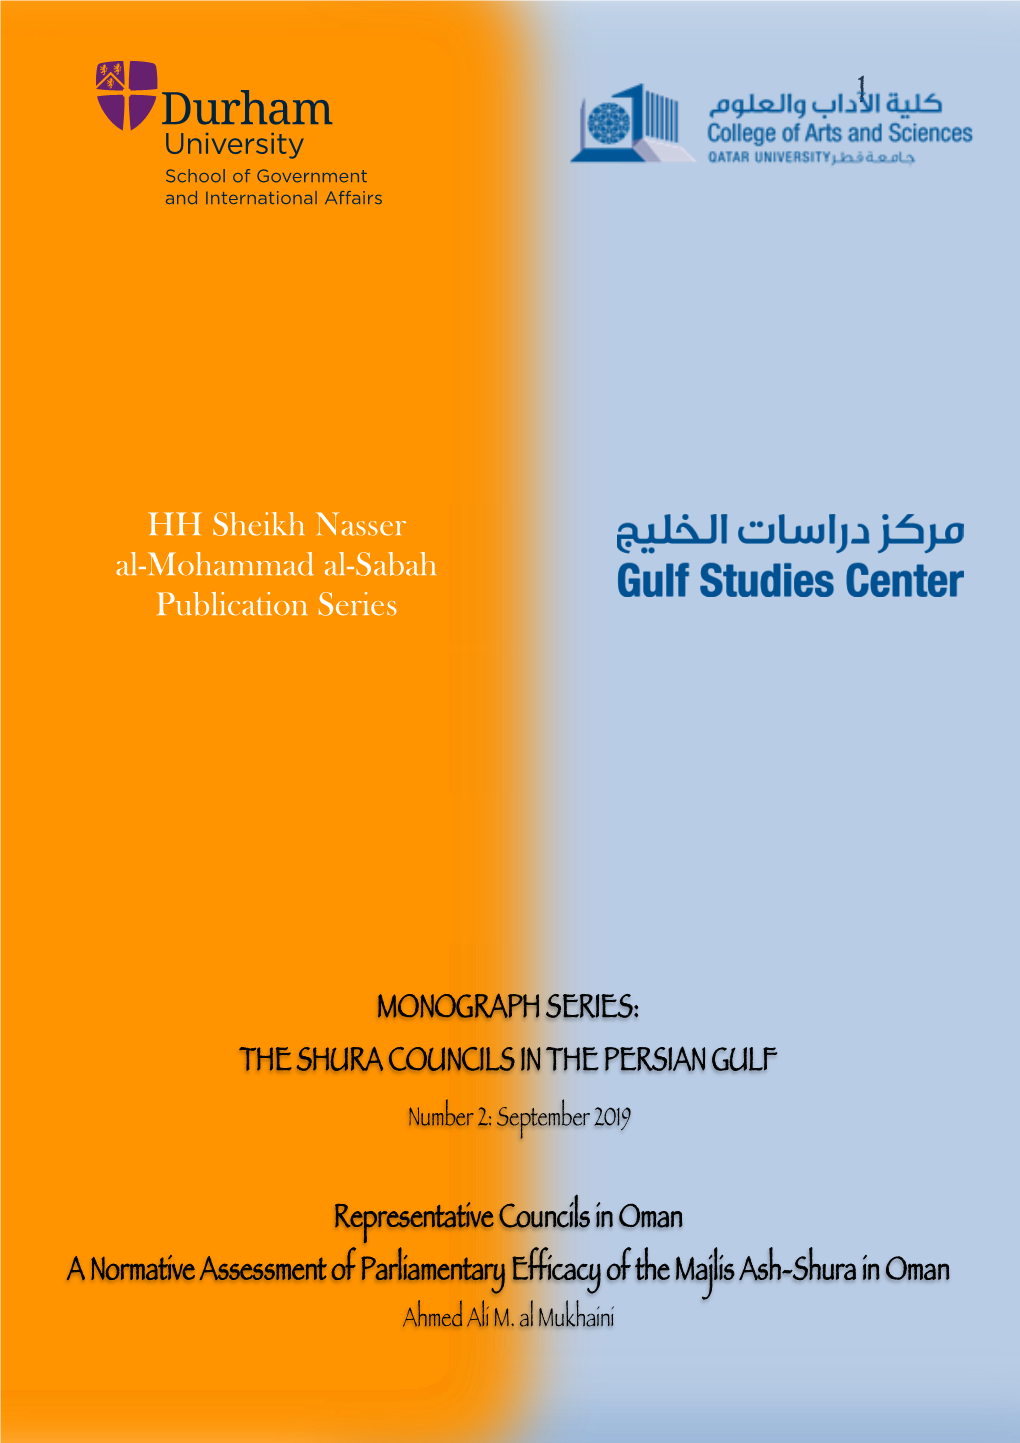 1 HH Sheikh Nasser Al-Mohammad Al-Sabah Publication Series